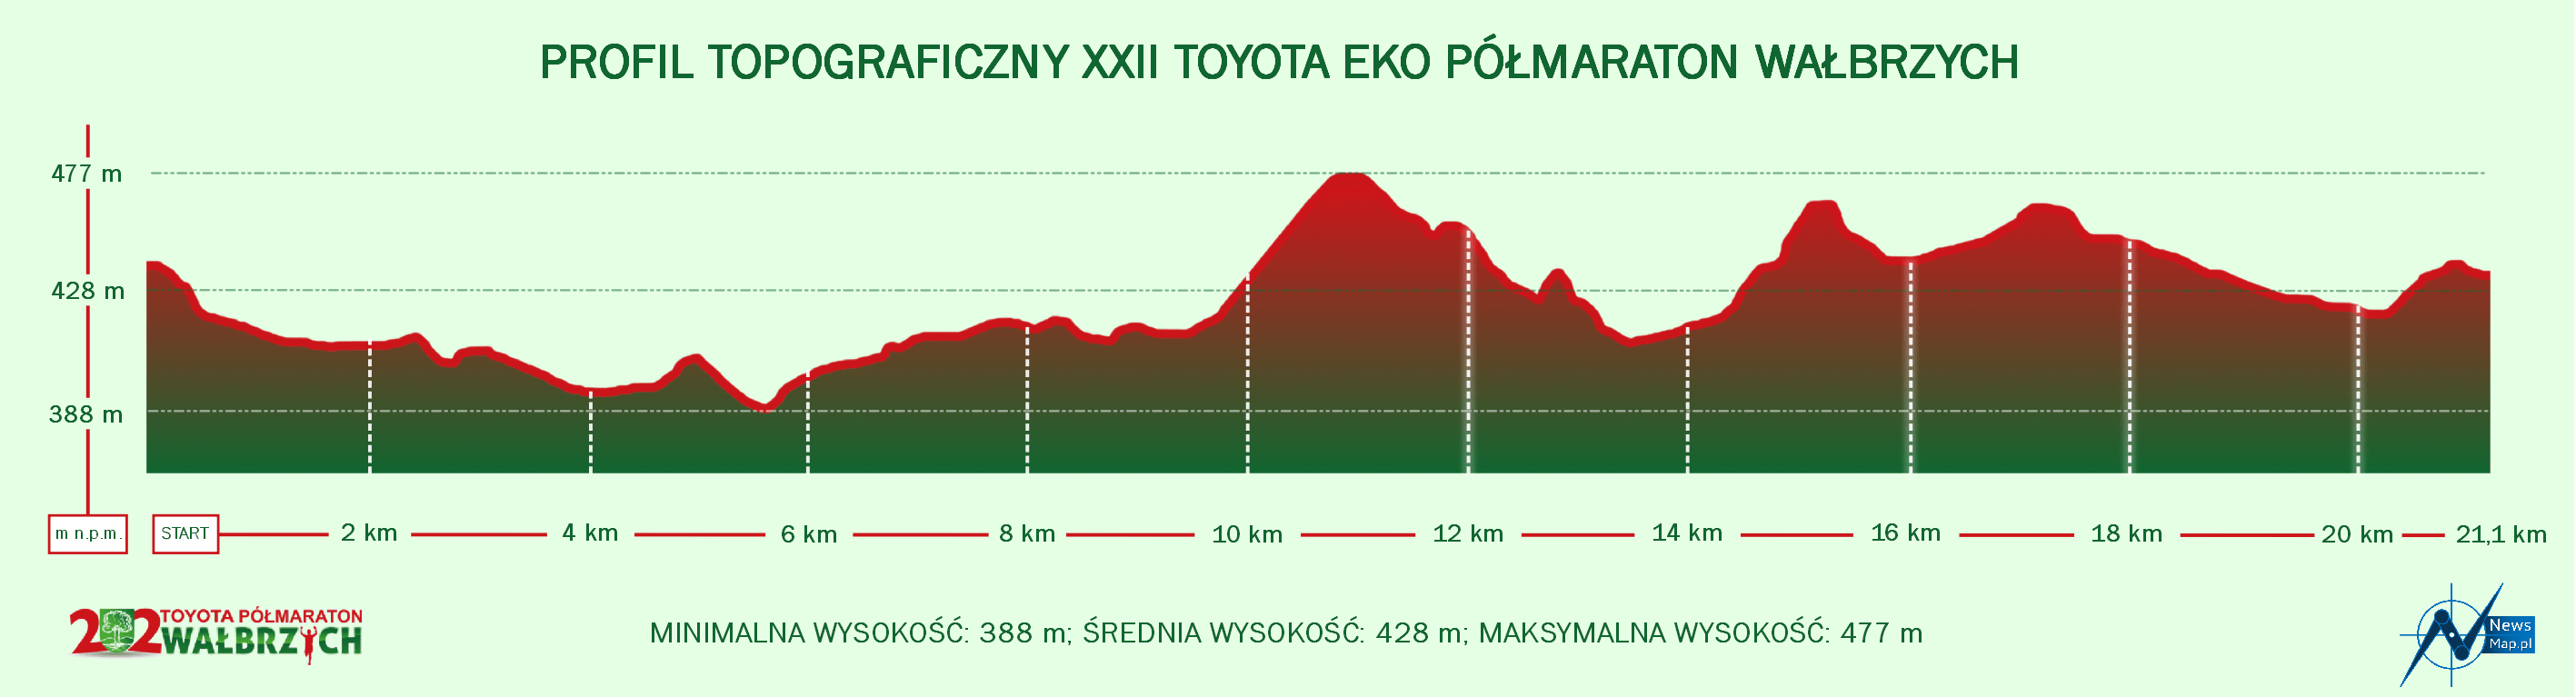 XXII Toyota Eko Półmaraton Wałbrzych - profil topograficzny